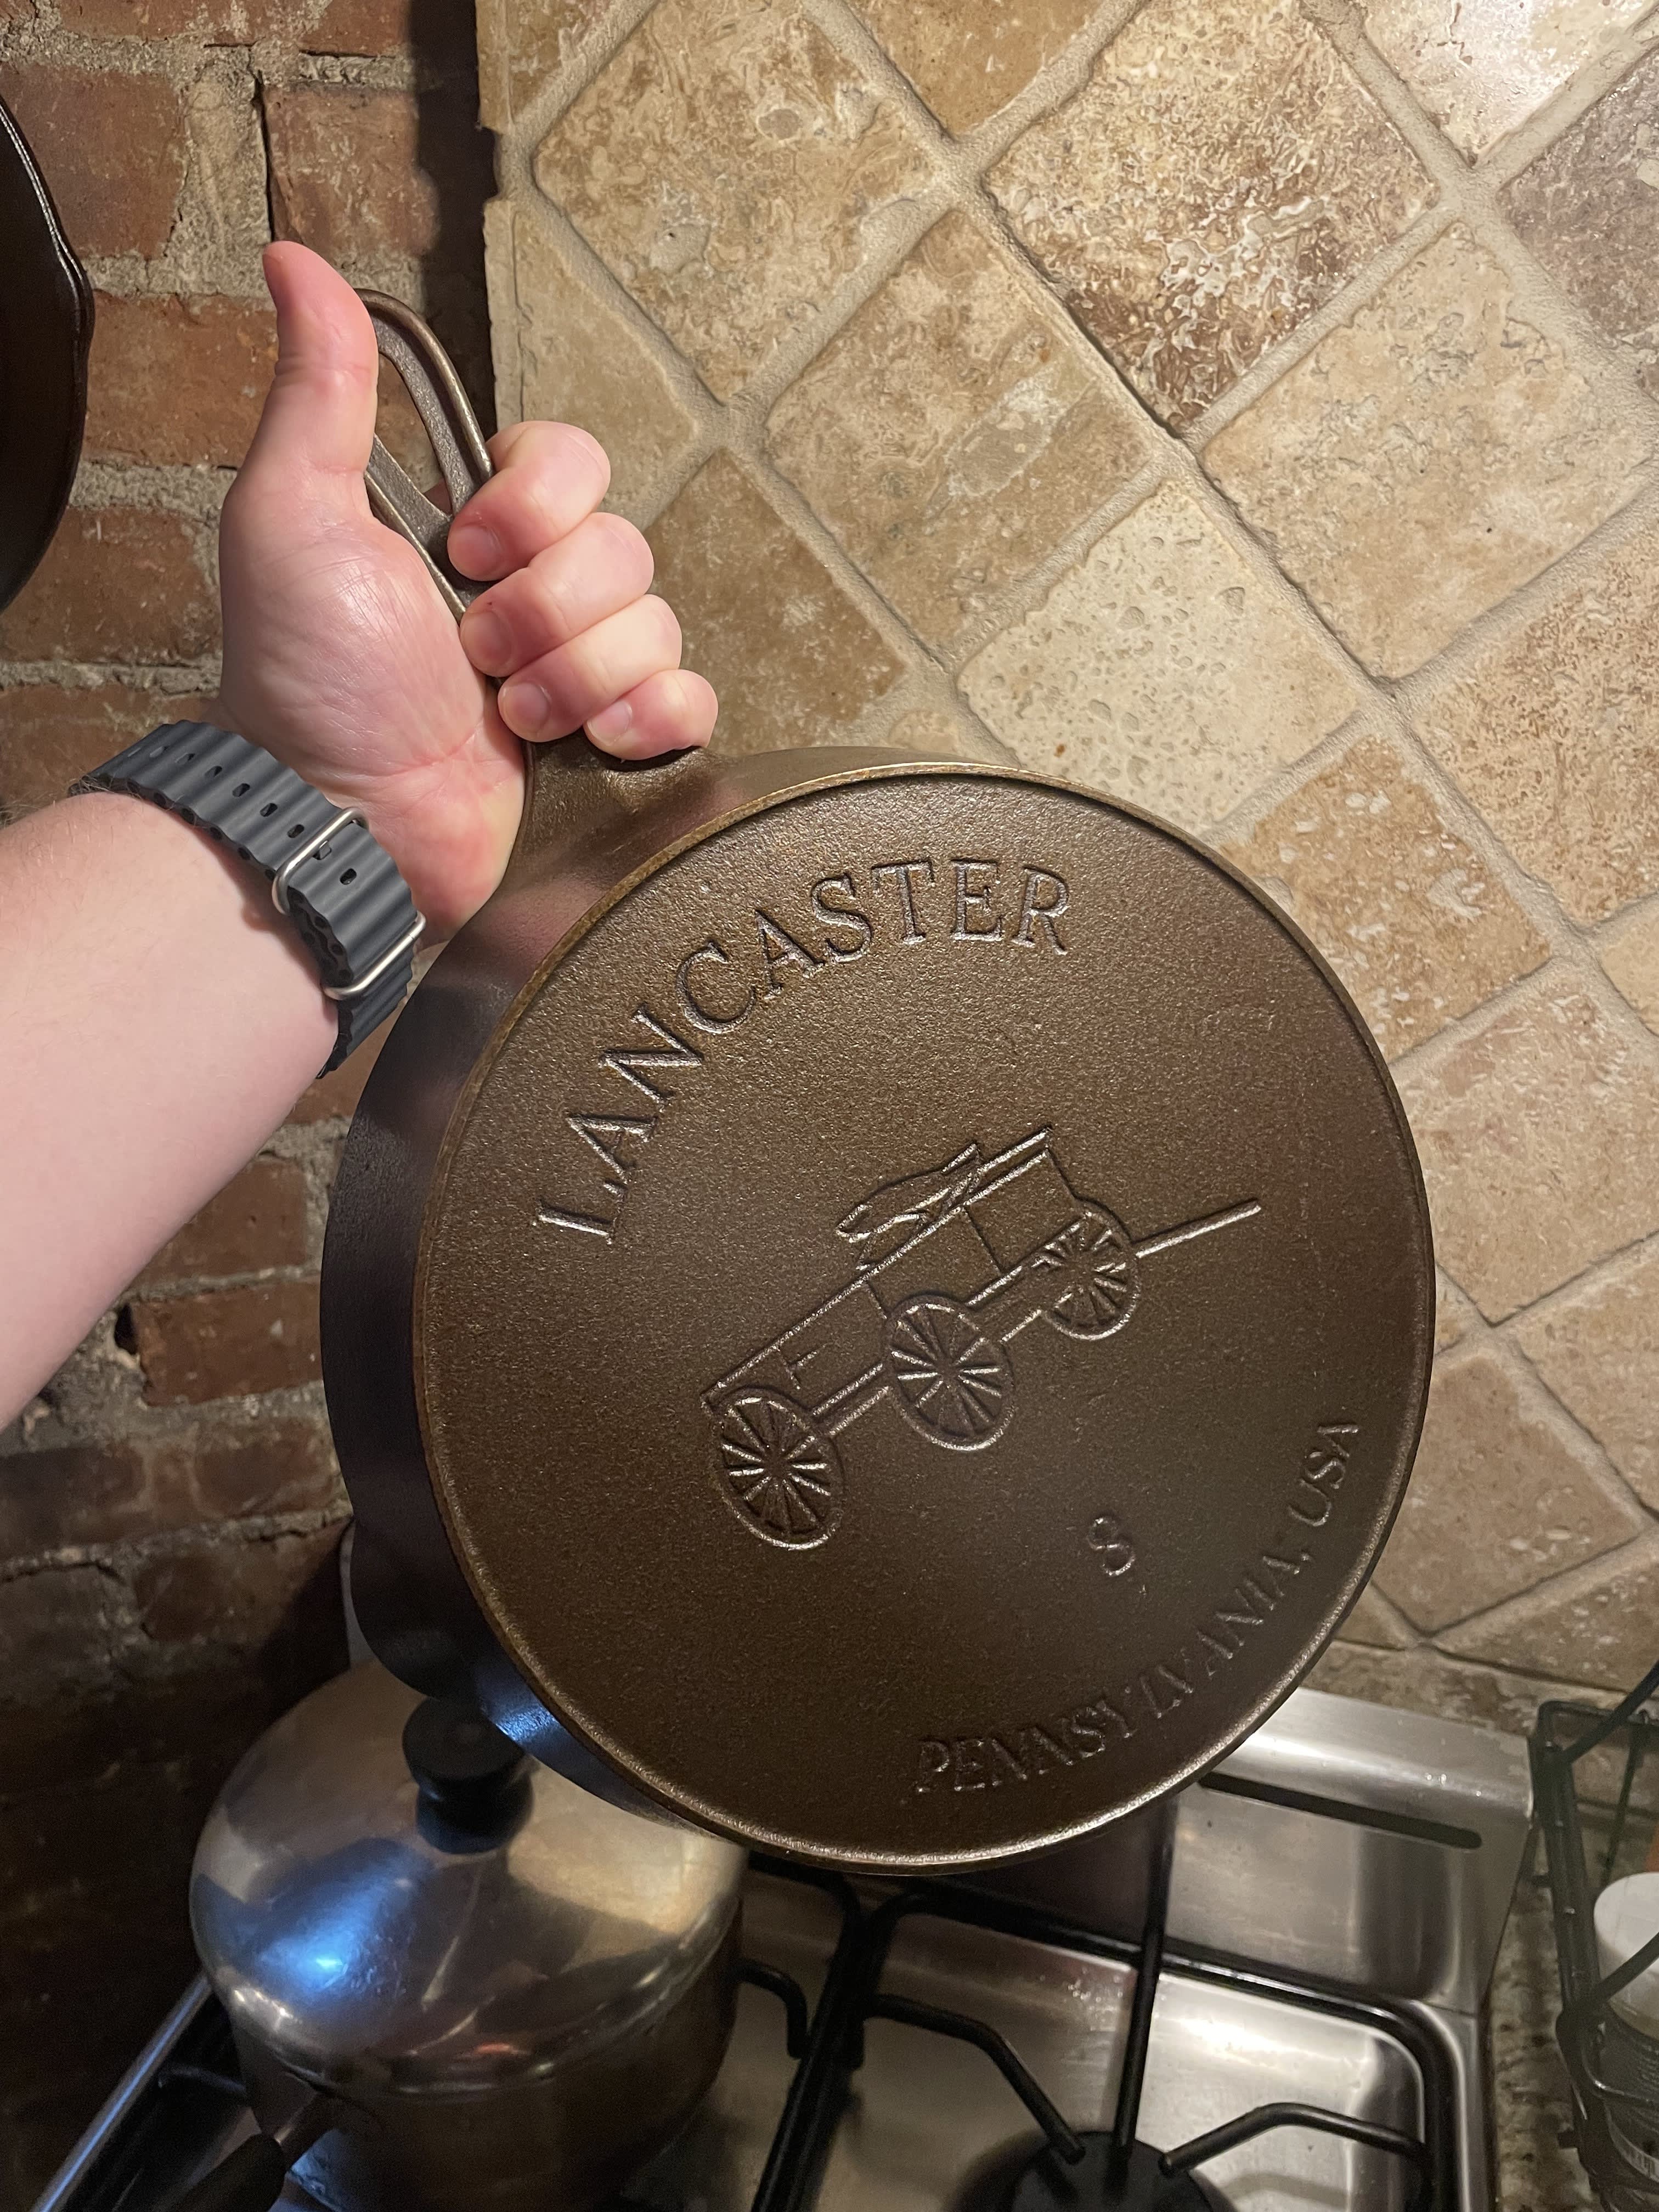 Lancaster Cast Iron  Lightweight, American-Made Cast Iron Cookware